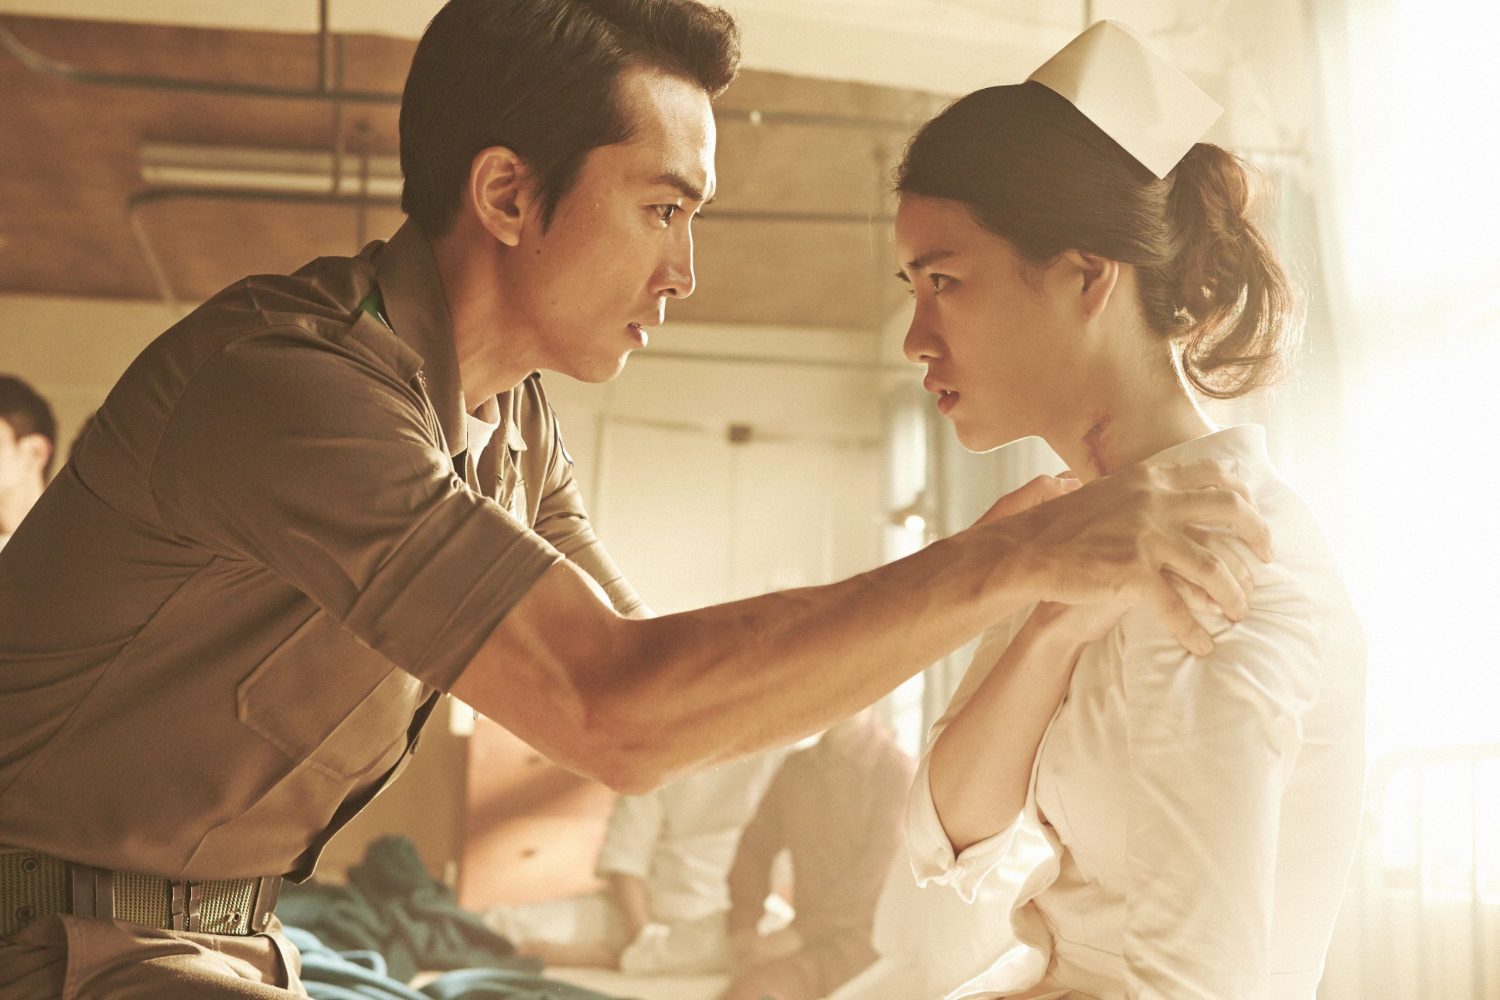 Lim Ji Yeon phim: Ám hình ảnh dục vọng - Obsessed (2014)